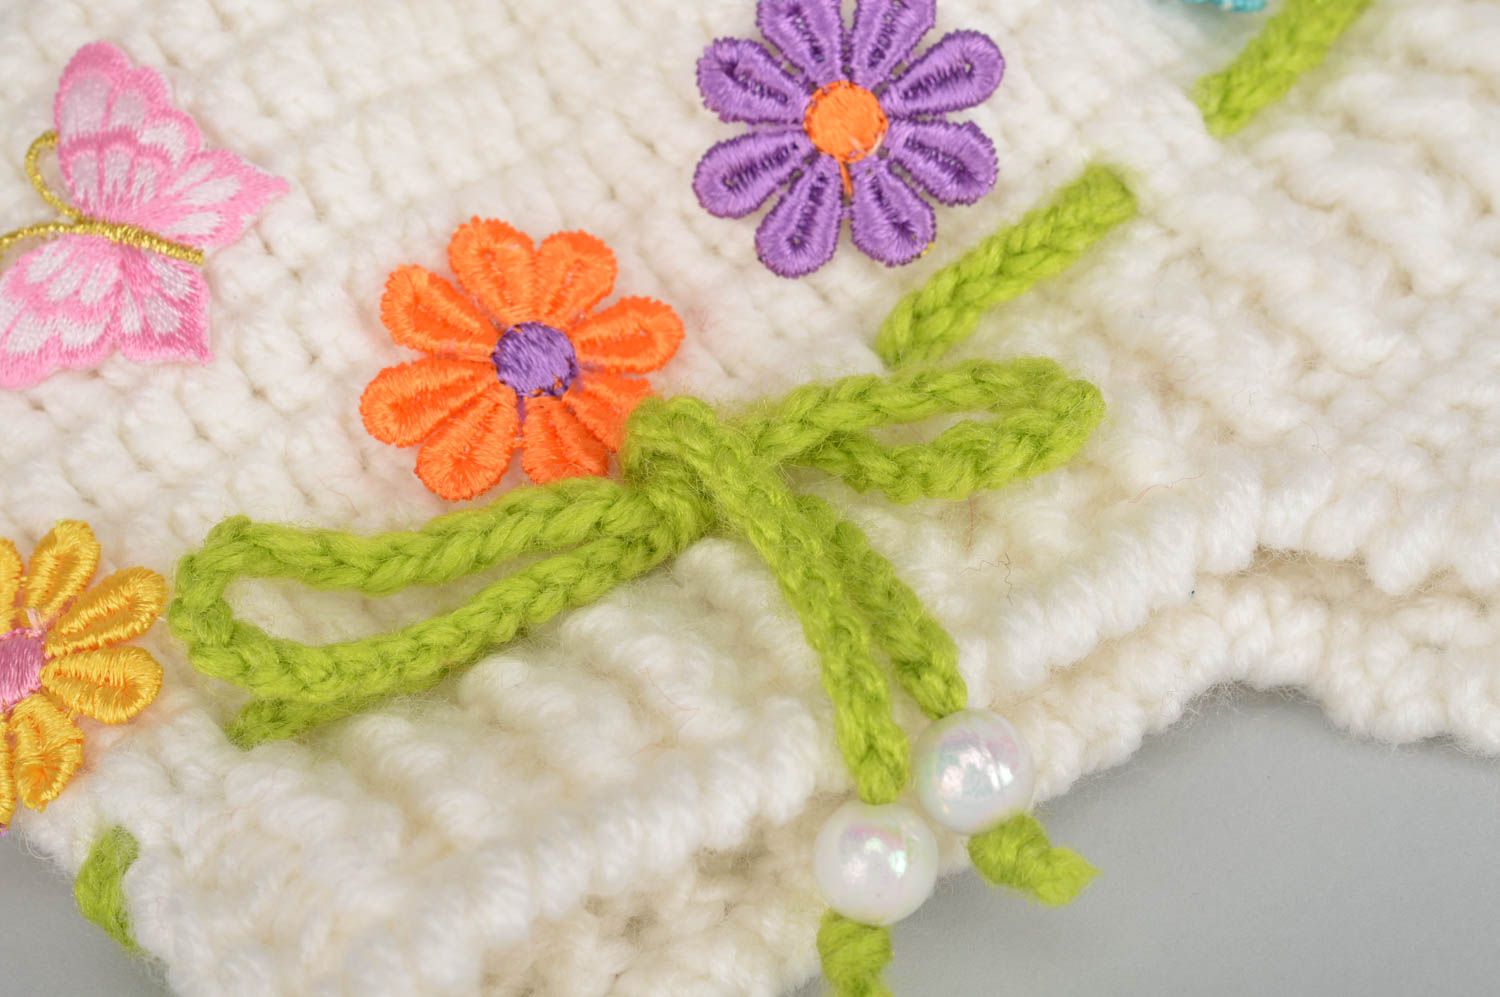 Gorro infantil tejido con agujas ropa para niñas hecha a mano accesorios de moda foto 4